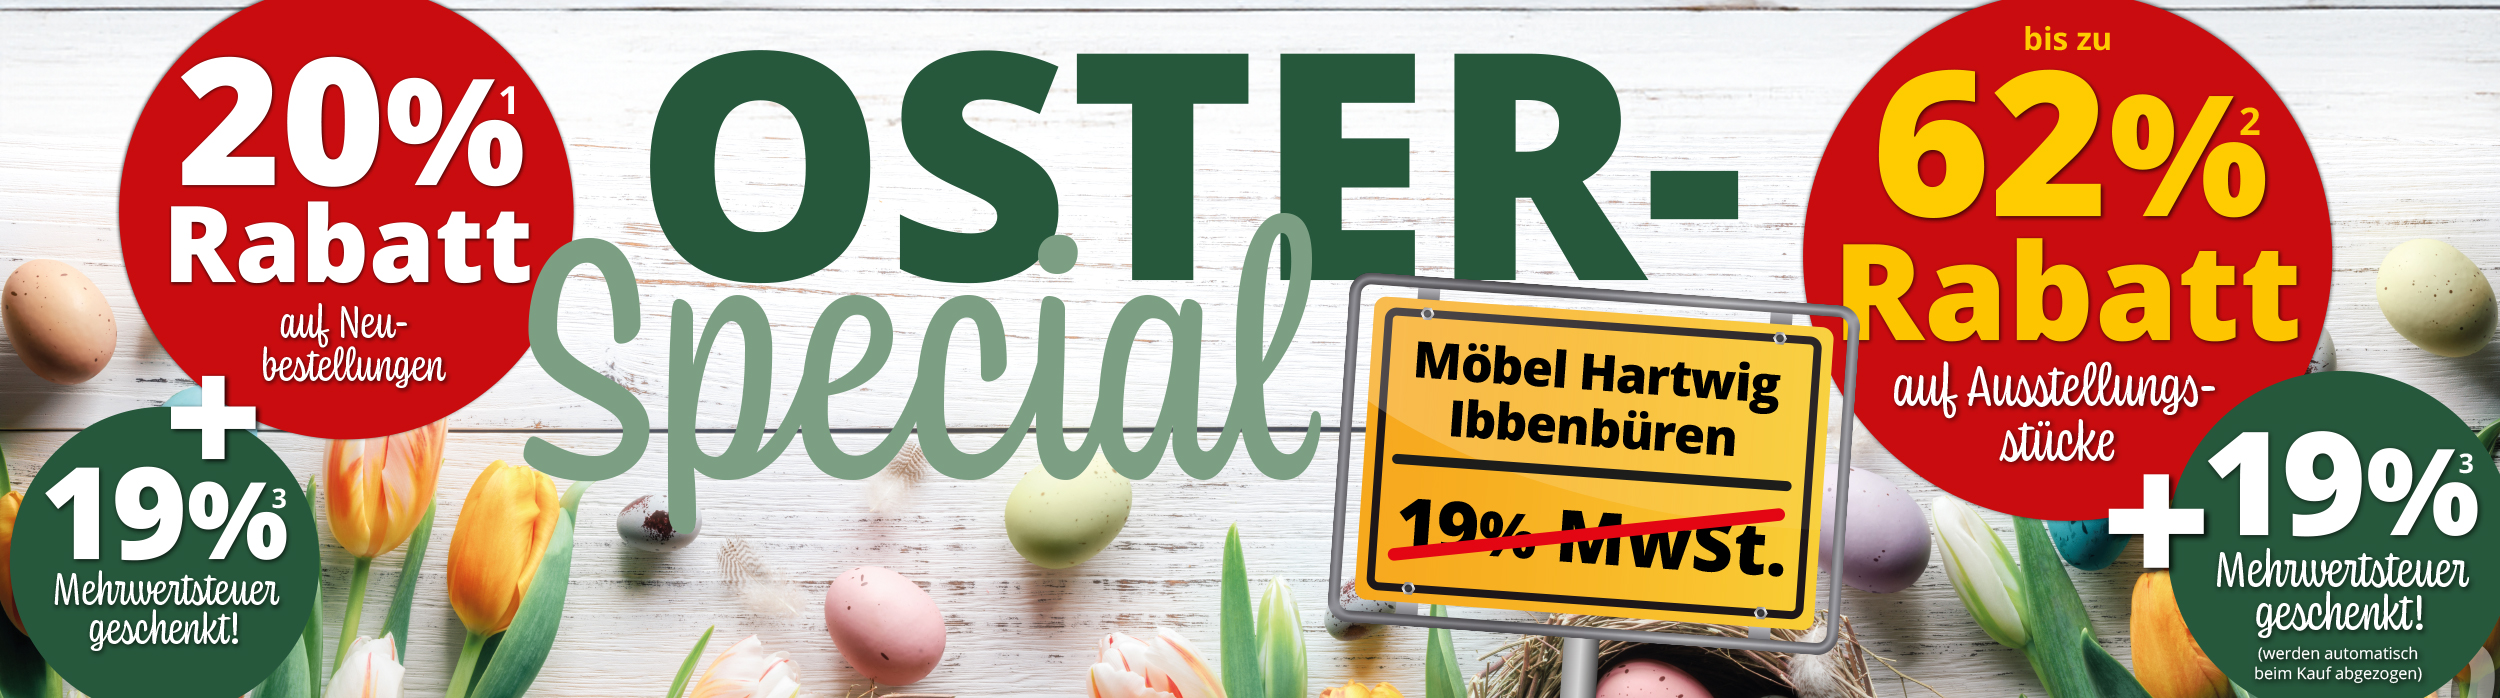 Großes Oster-Special bei Möbel Hartwig in Ibbenbüren: 20% Rabatt auf Neubestellungen + 19% Mehrwertsteuer geschenkt und bis zu 62% Rabatt auf Ausstellungsstücke + 19% Rabatt Mehrwertsteuer geschenkt!